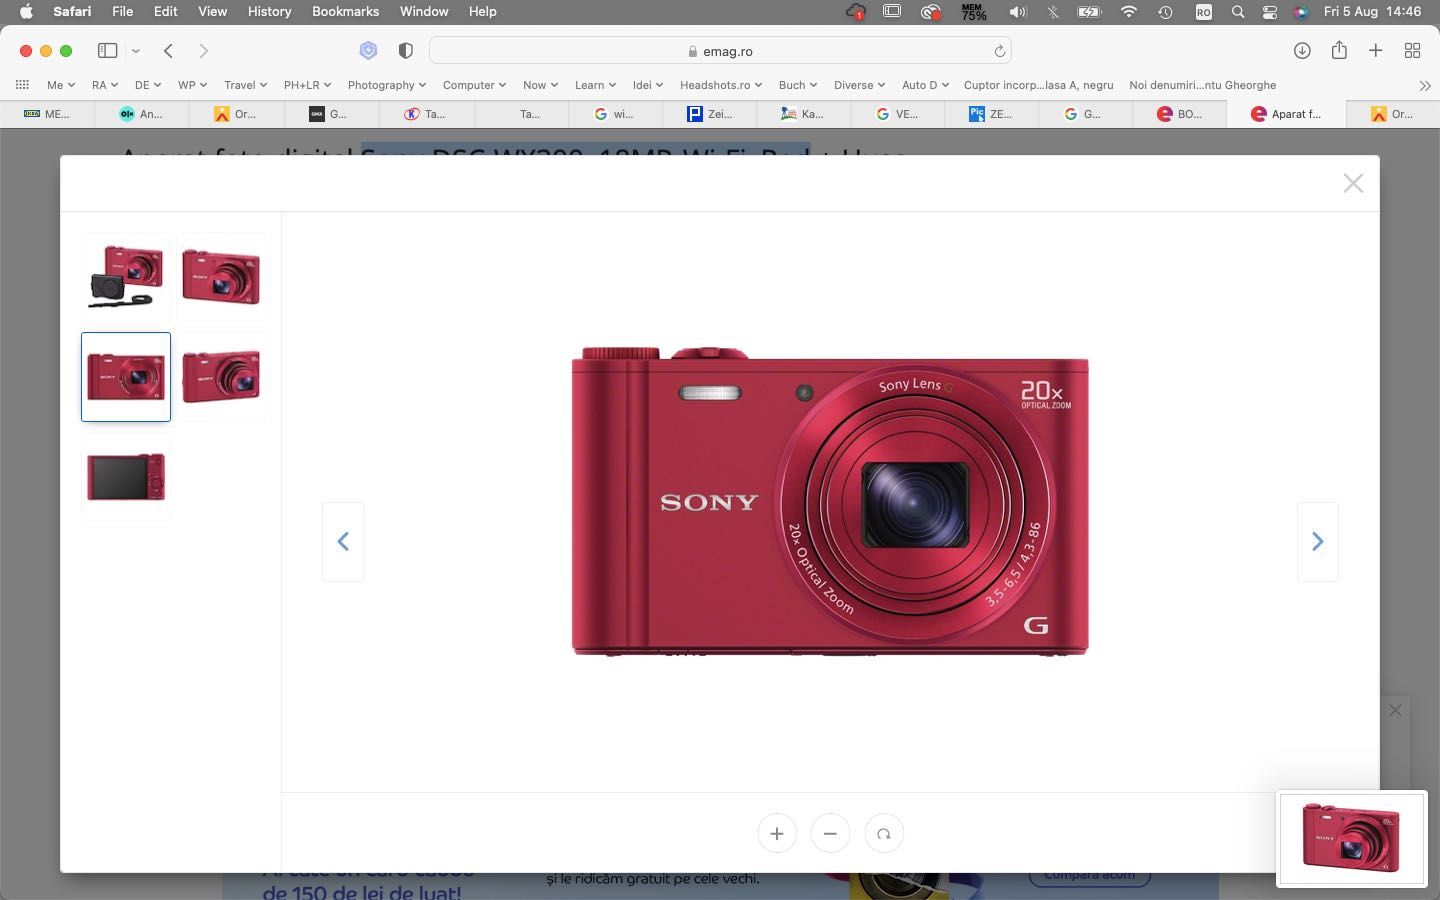 Sony DSC-WX300, 18MP, Wi-Fi, Red + Fucsia